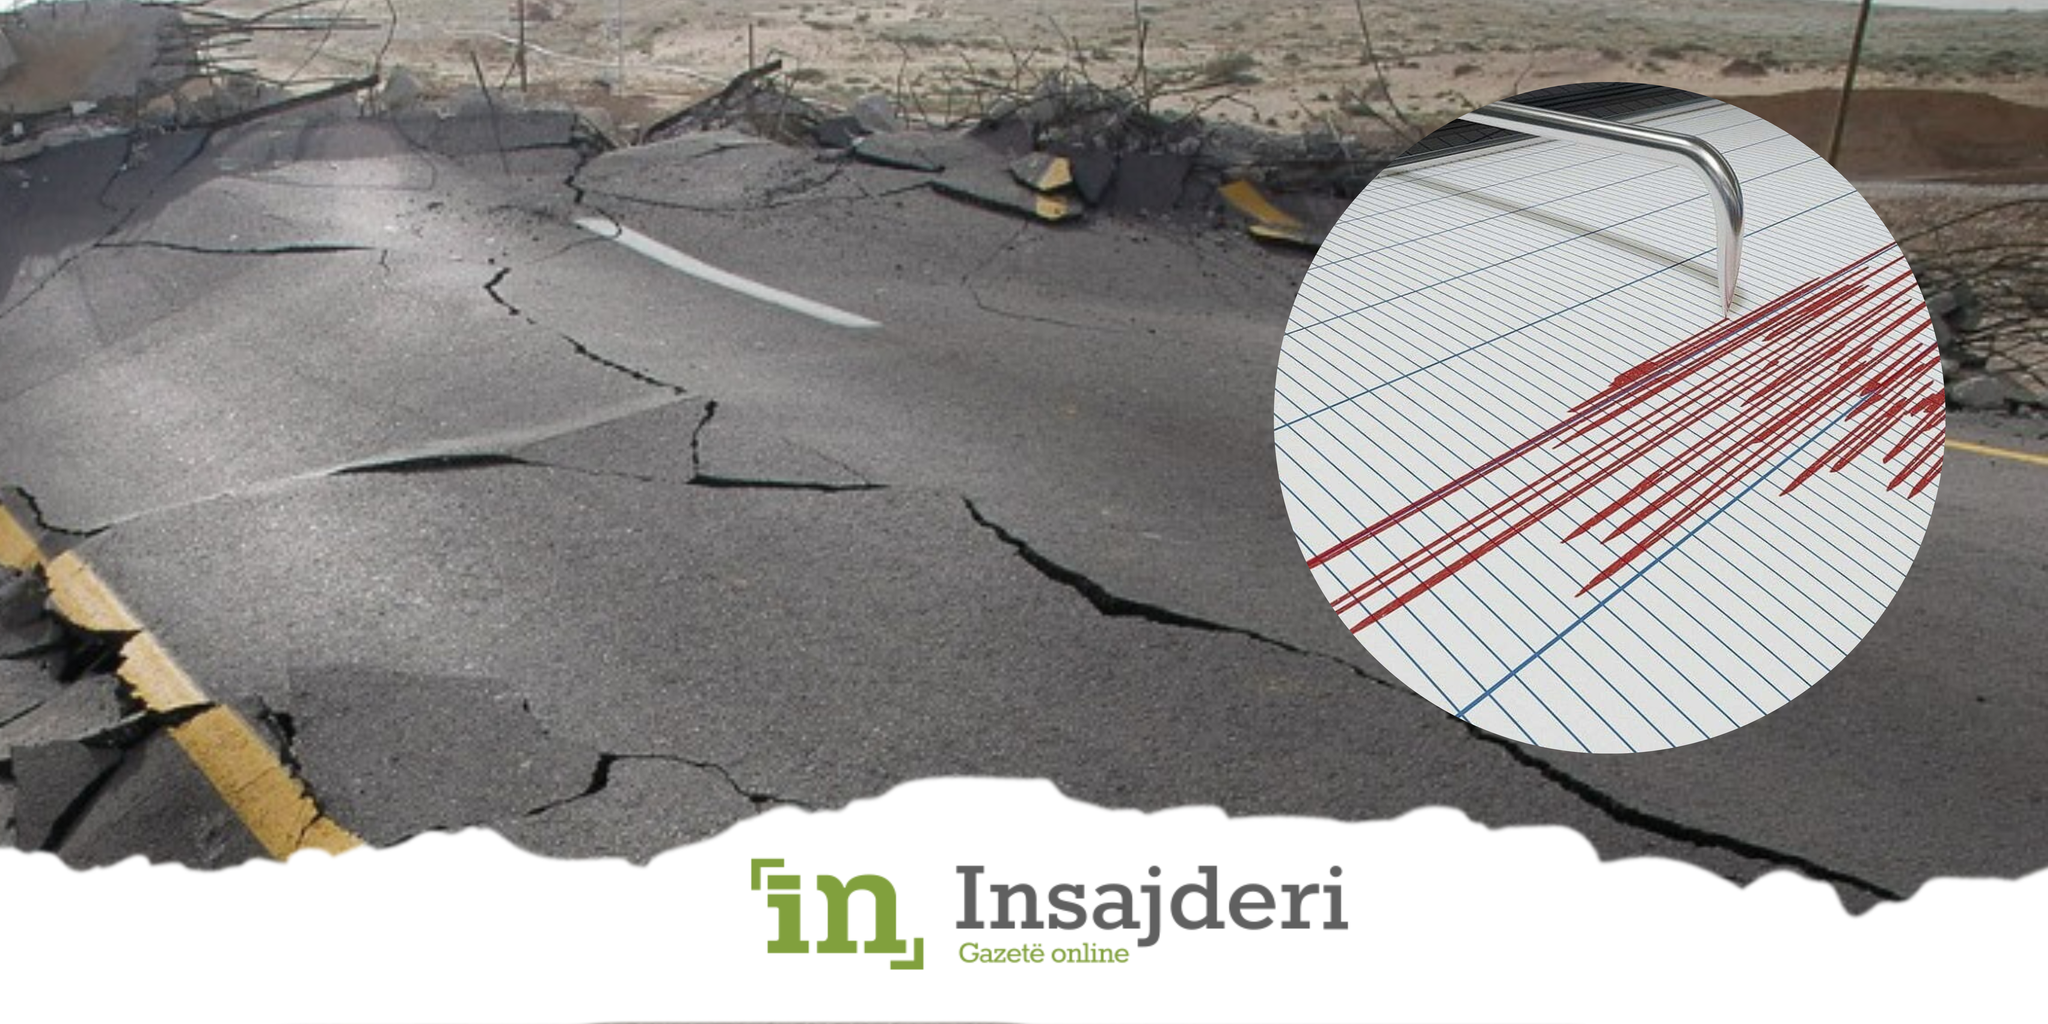 Tërmeti që u ndje edhe në Kosovë - Reagon sizmologu Mustafa-INSAJDERI.ORG